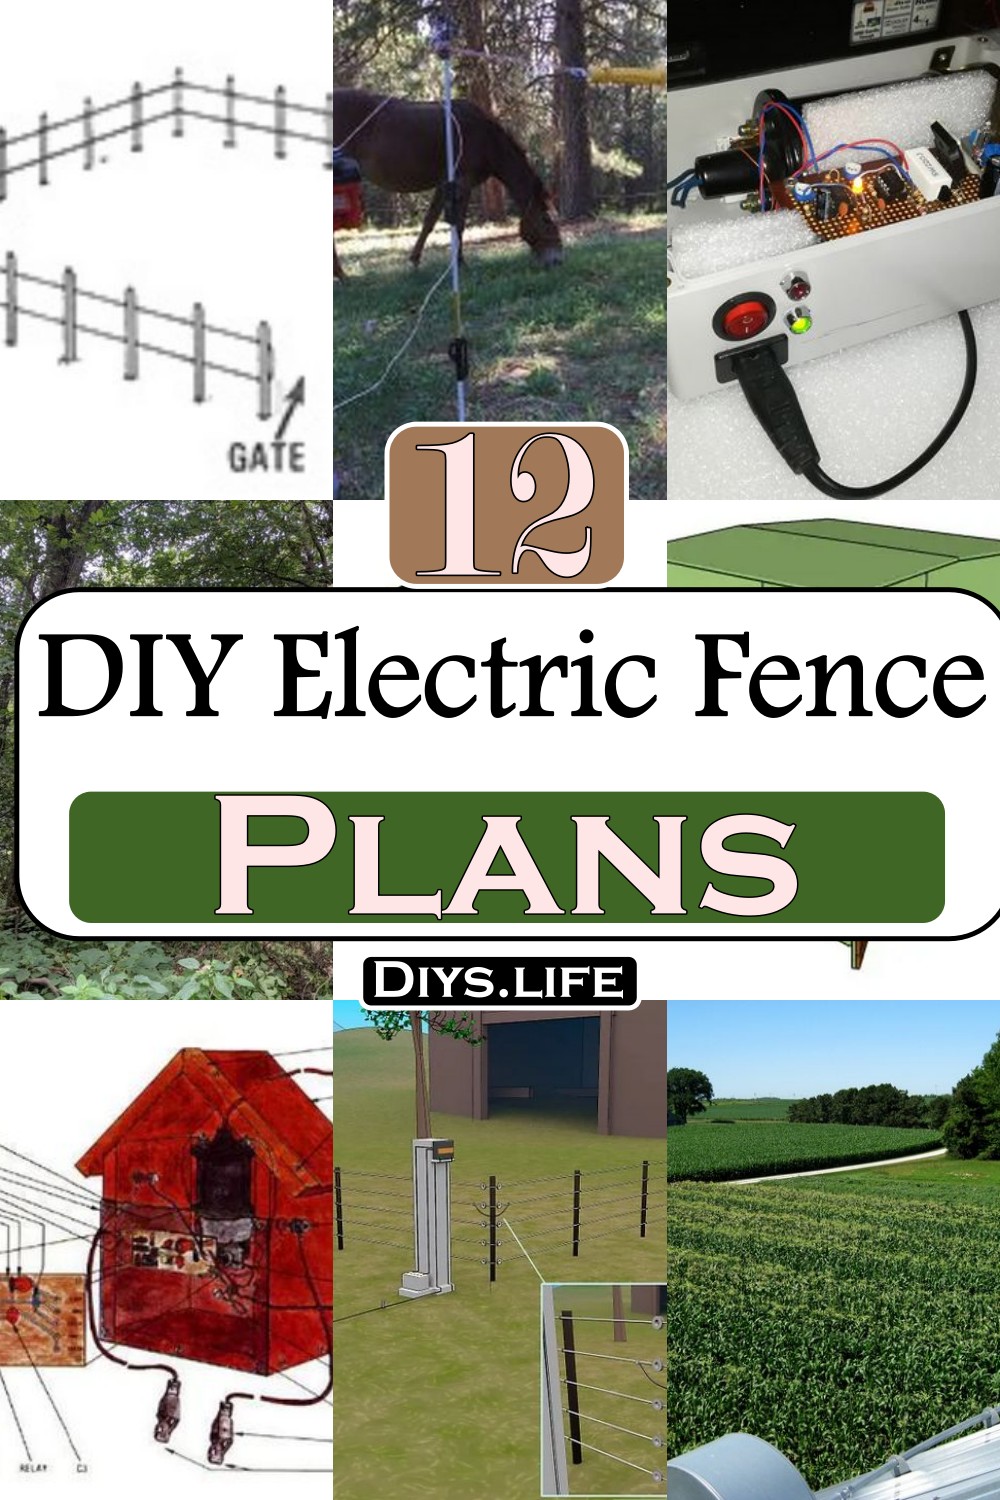 DIY Electric Fence Ideas